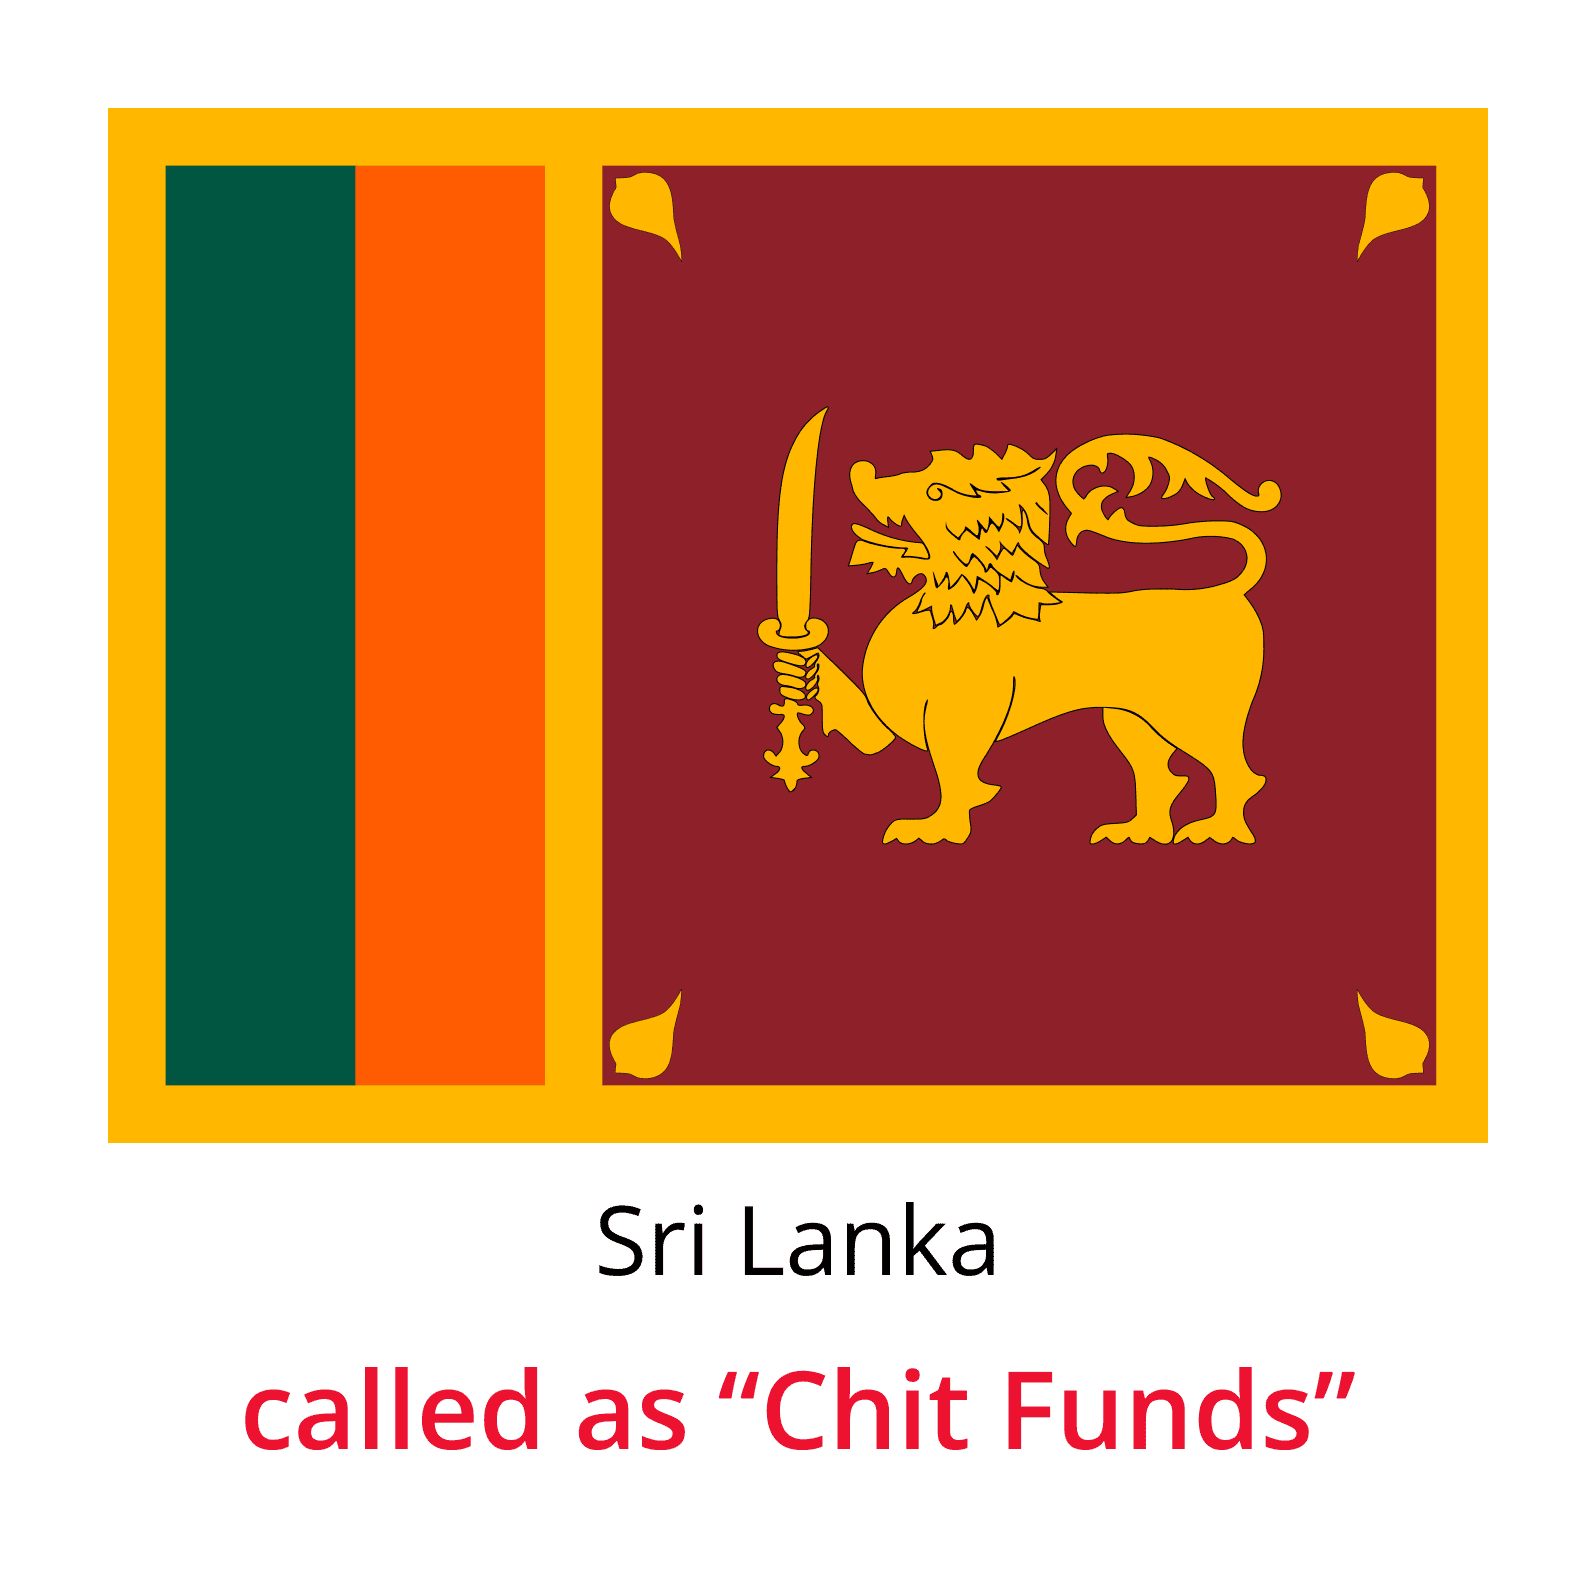 Chit fund Globally-Sri-Lanka